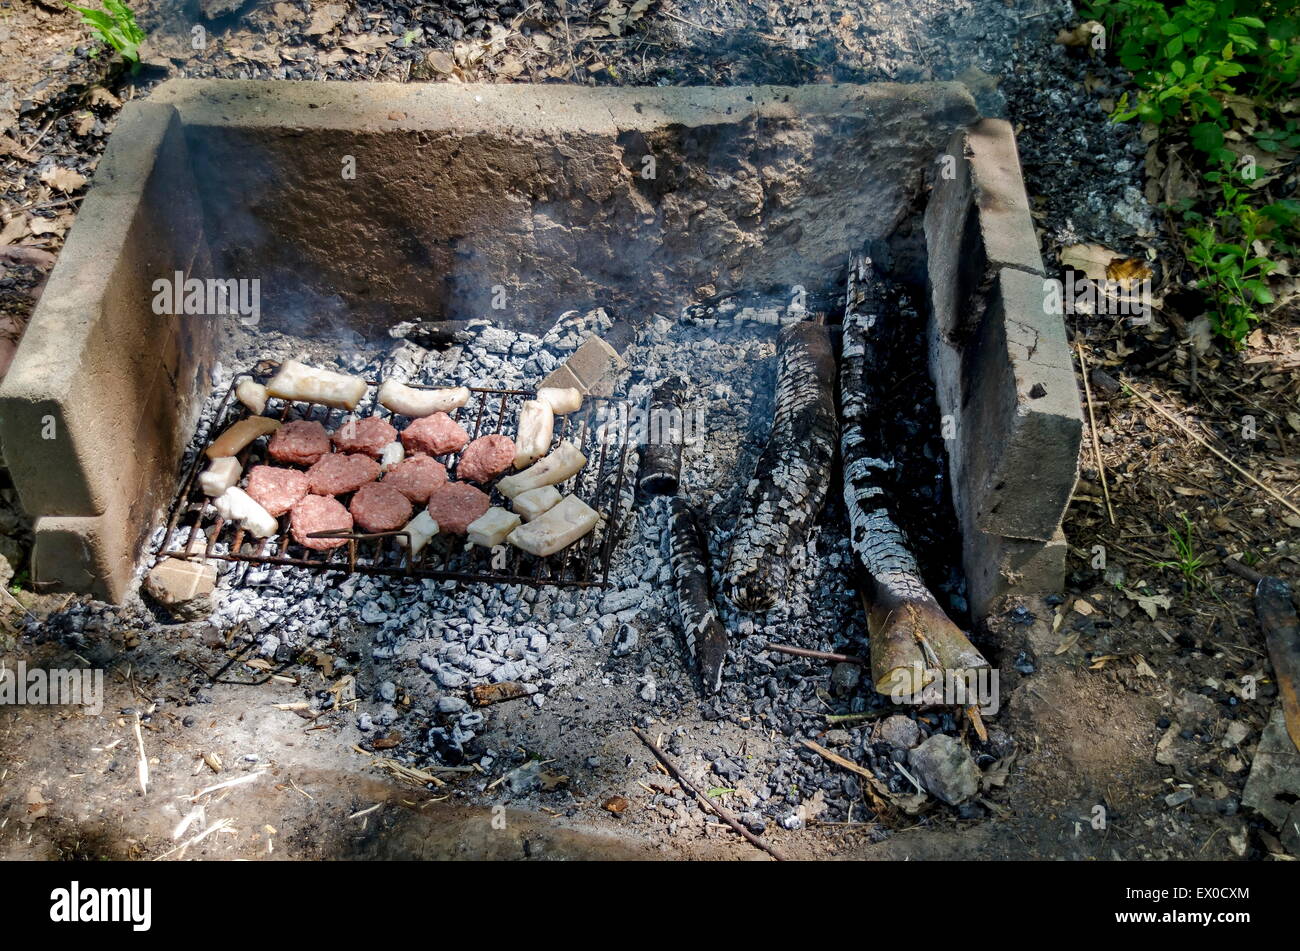 Cocinar los filetes sobre brasas de fuego abierto Foto de stock